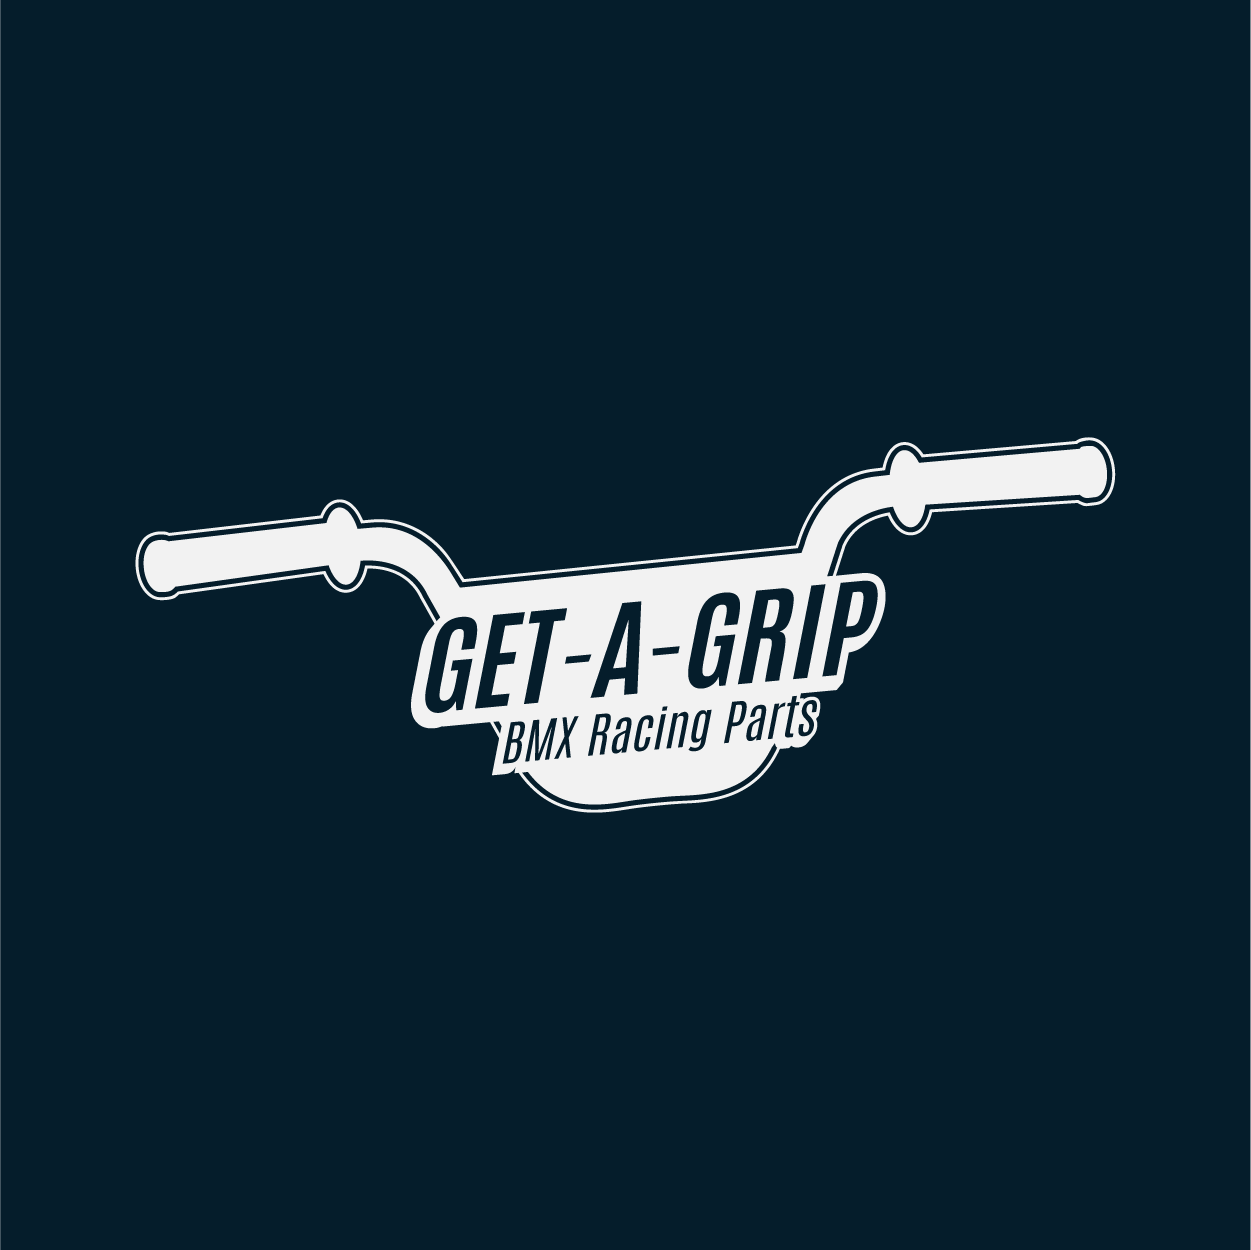 Get-A-Grip BMX Racing Parts